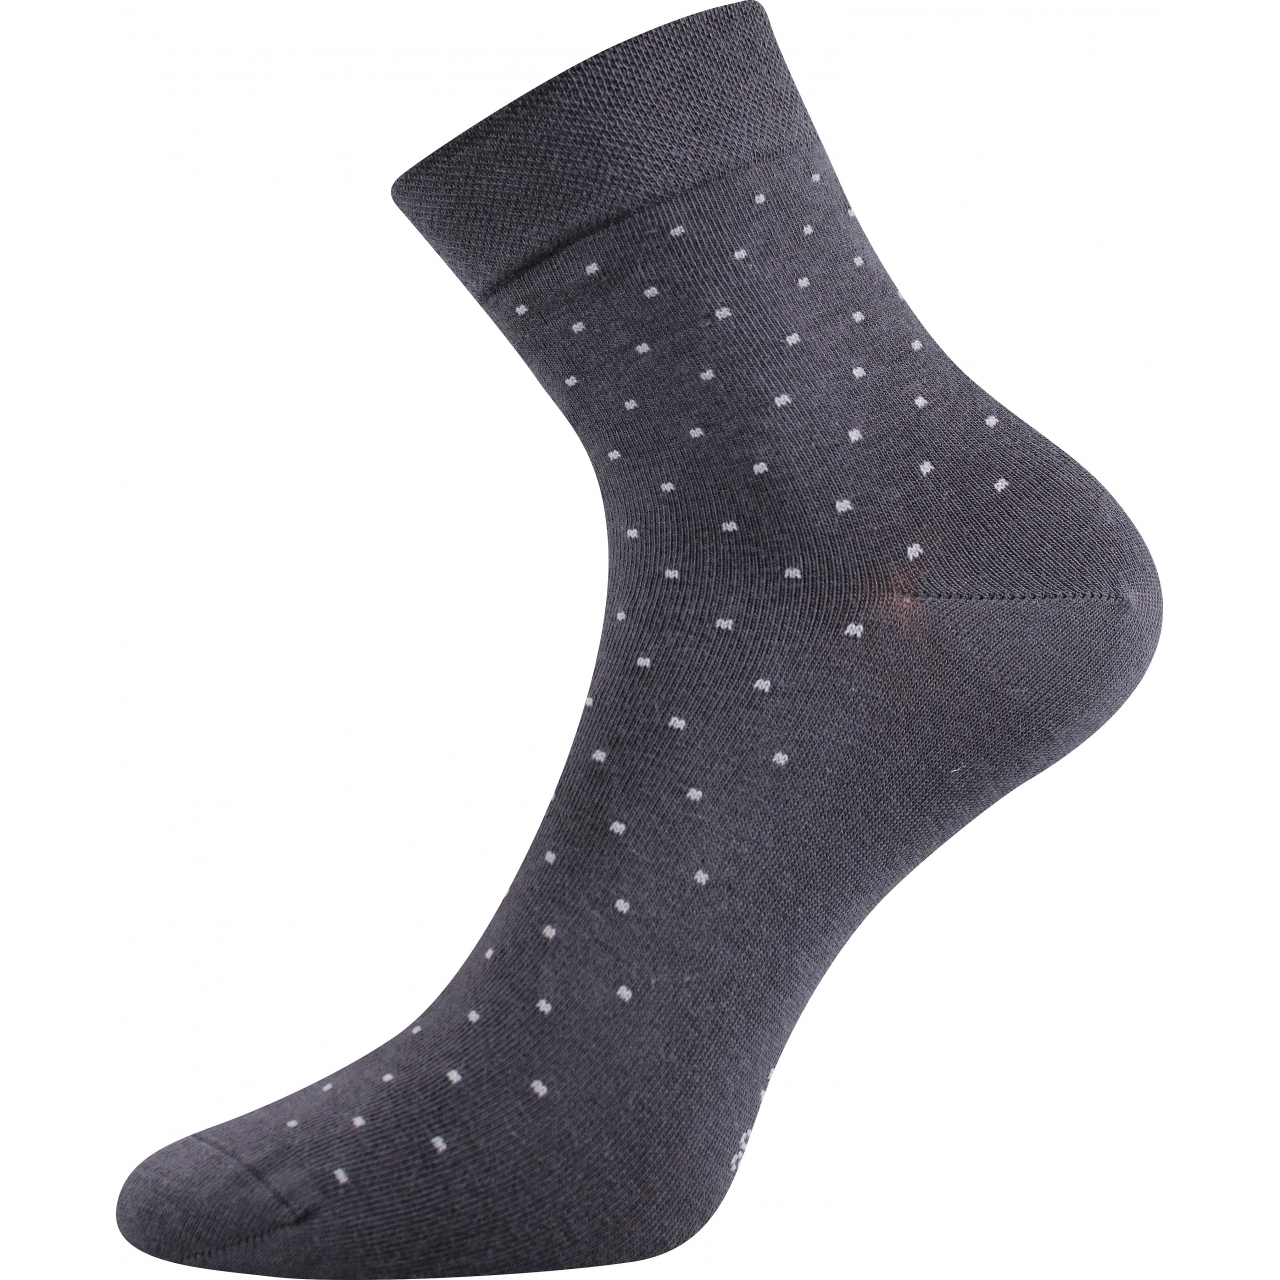 Ponožky dámské elegantní Lonka Fiona - tmavě šedé, 35-38